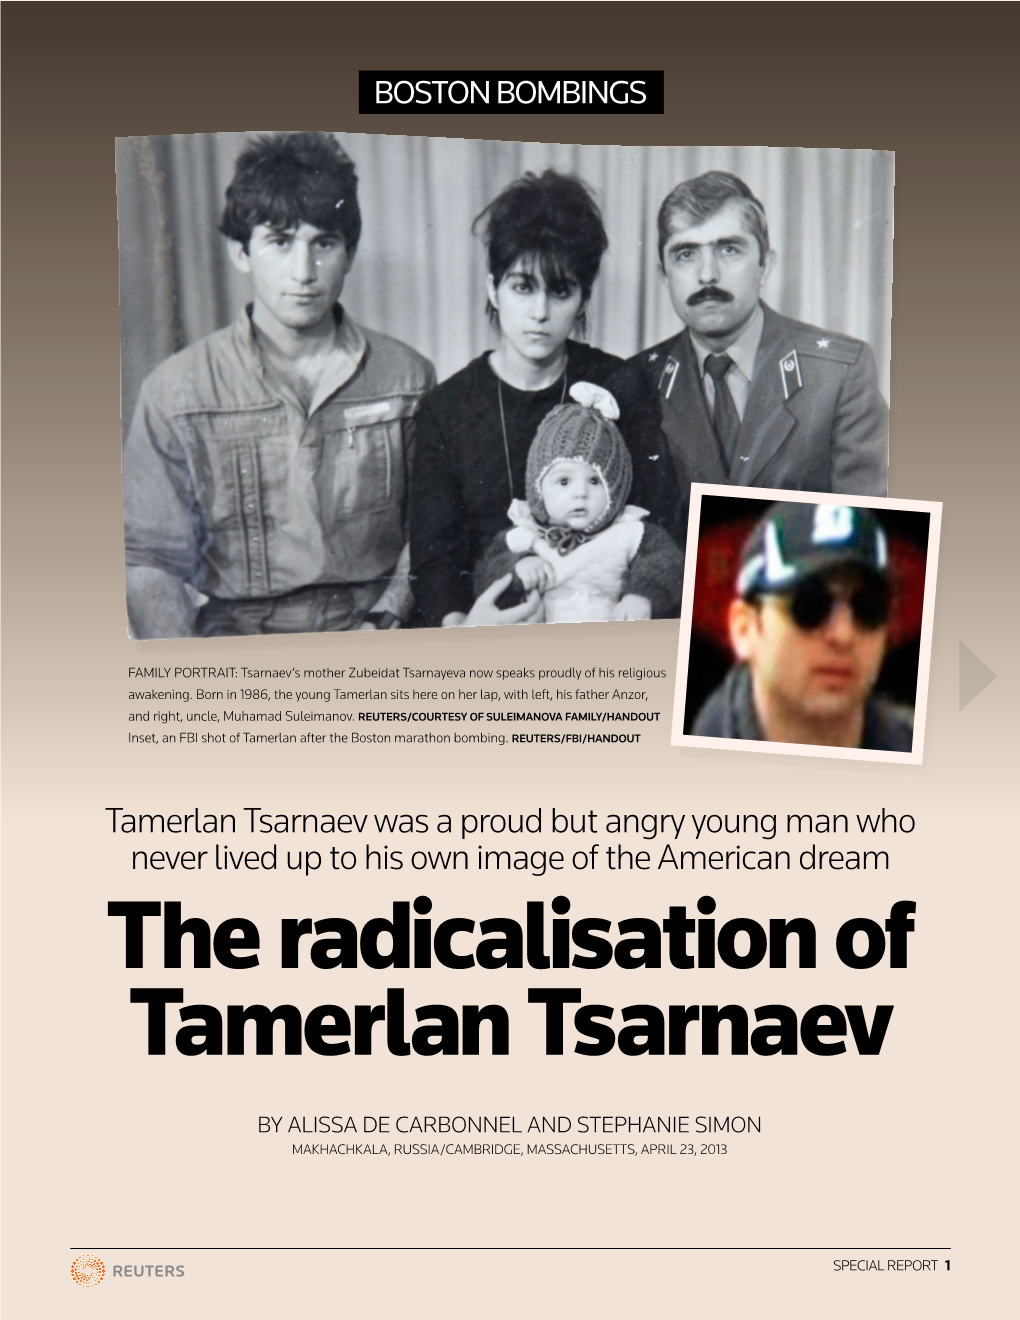 The Radicalisation of Tamerlan Tsarnaev